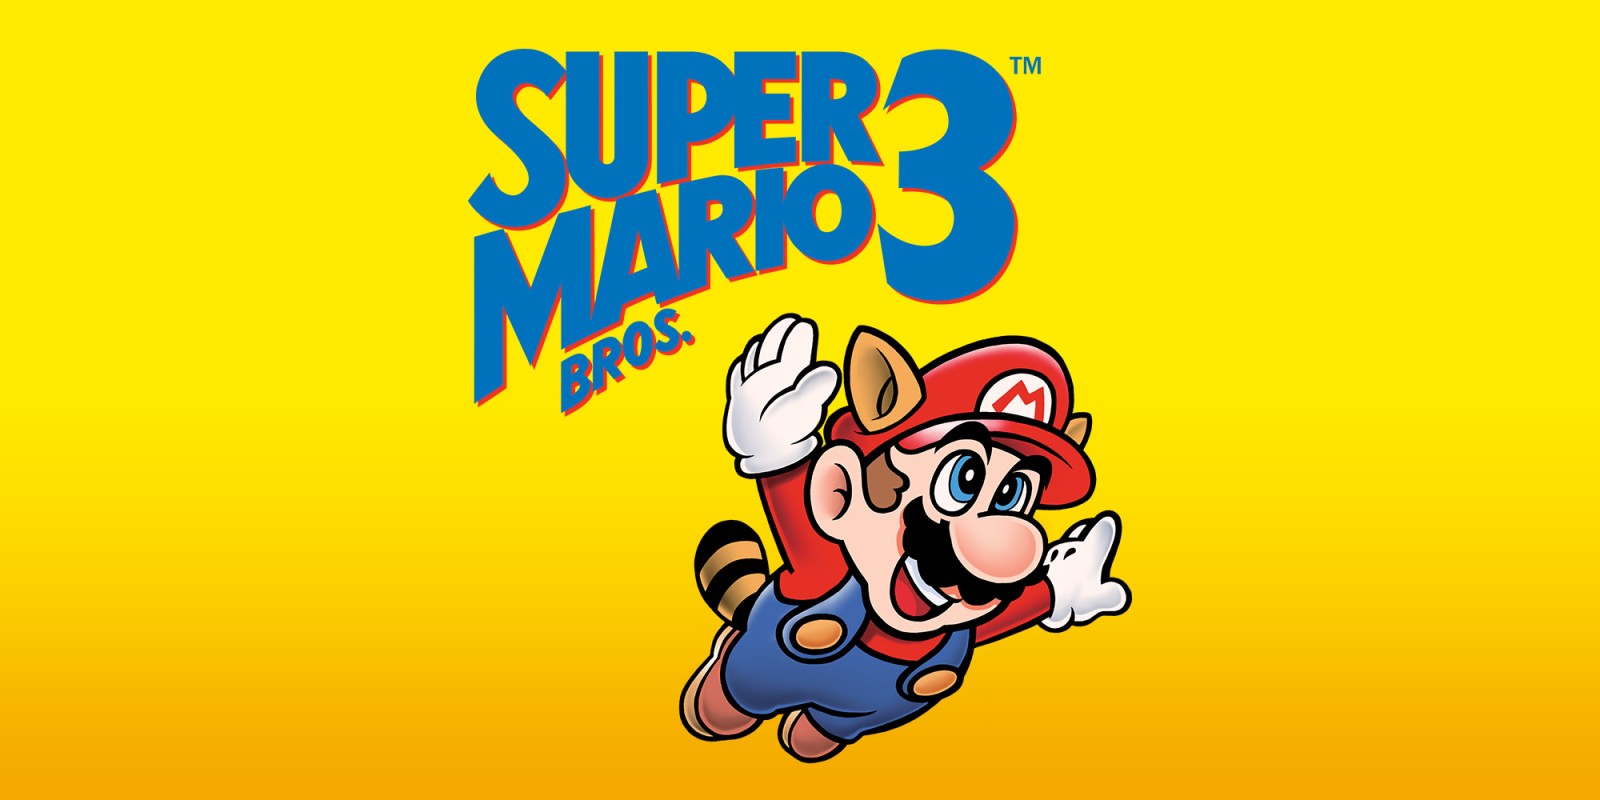 super mario bros 3 online games